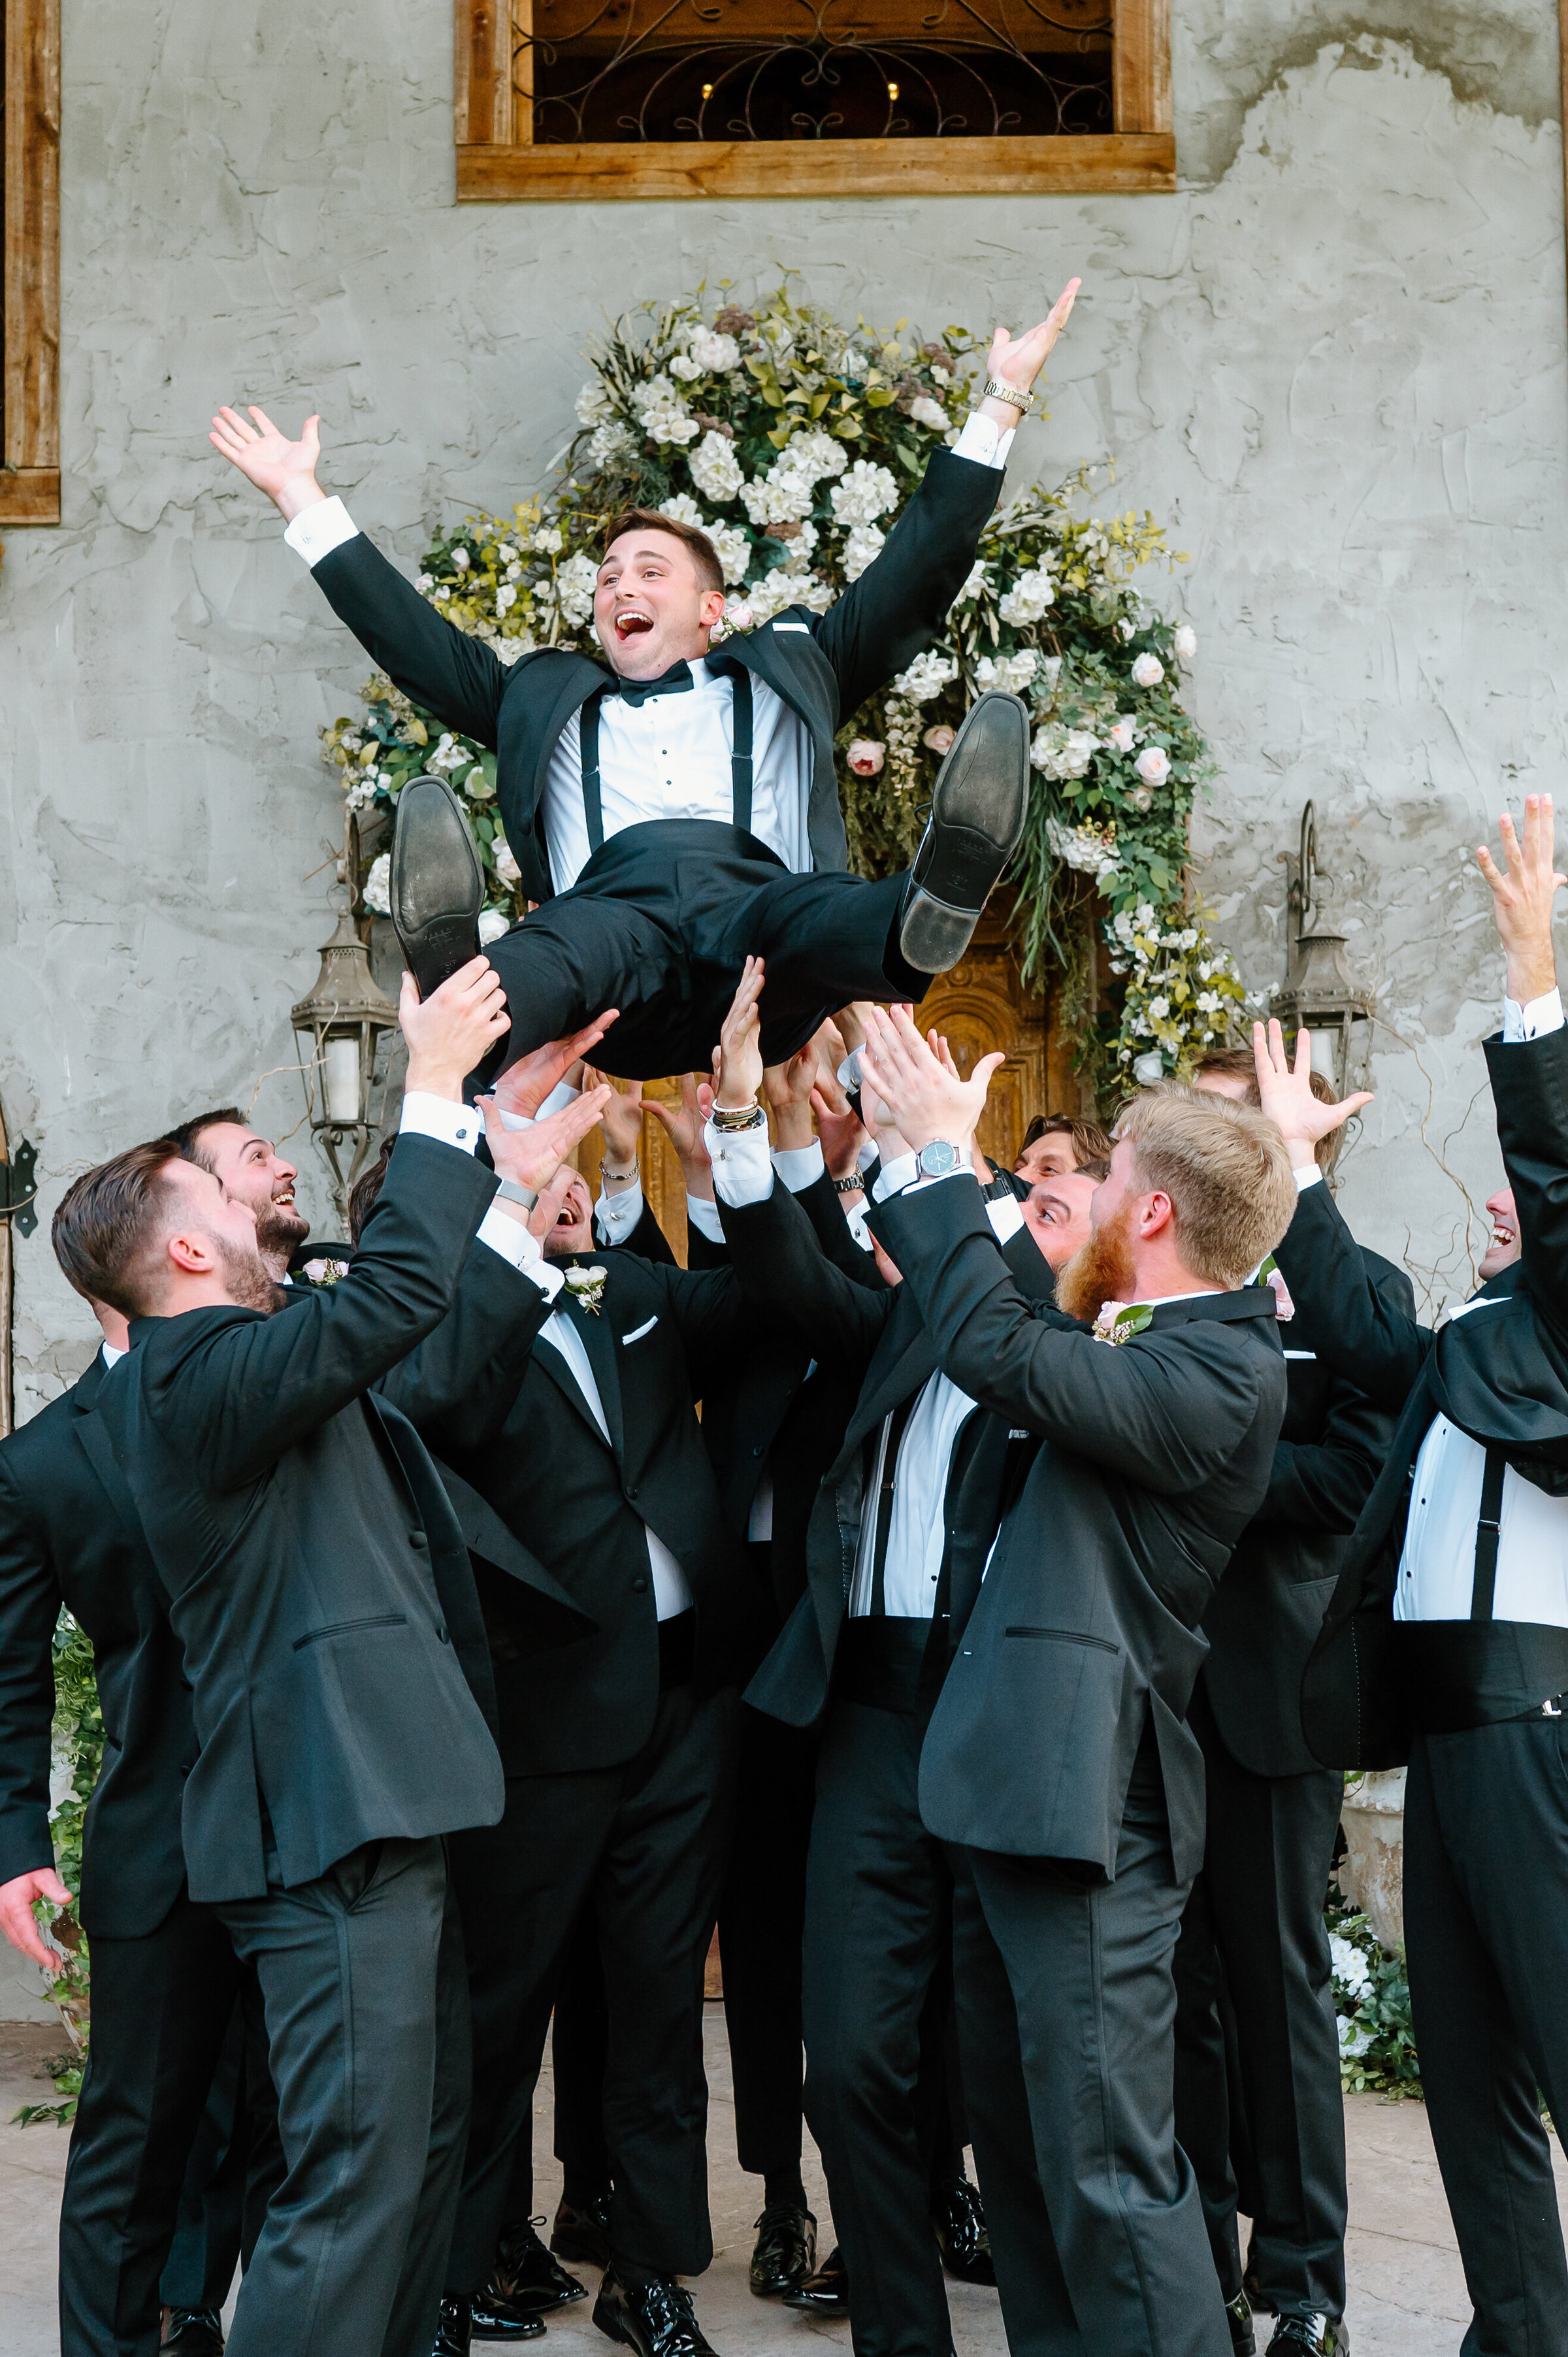 Groomsmen tossing groom into air